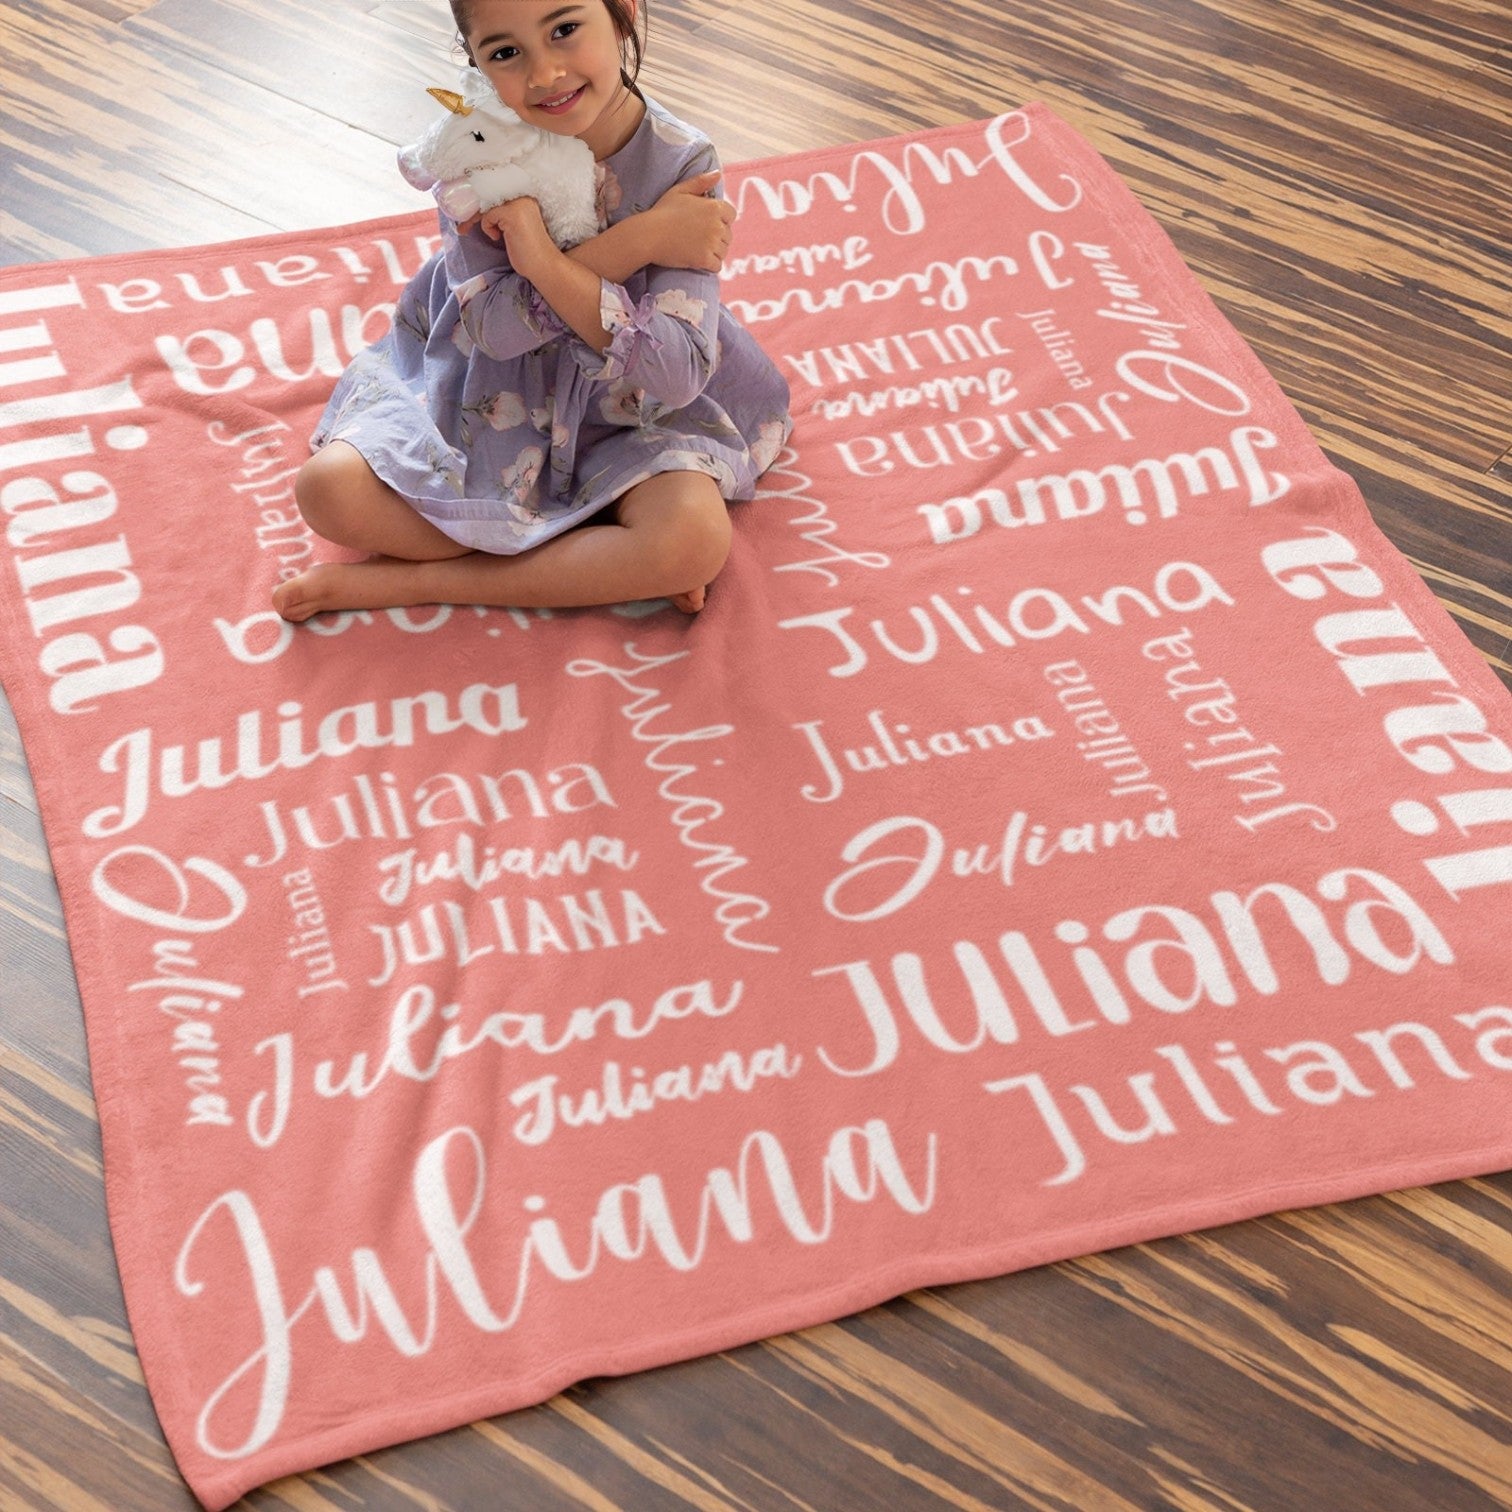 Custom Blanket Gift For Kids - Personalized Gifts For Kids - Lovely Kid Blanket - Custom Kid's Name Super Soft Blanket